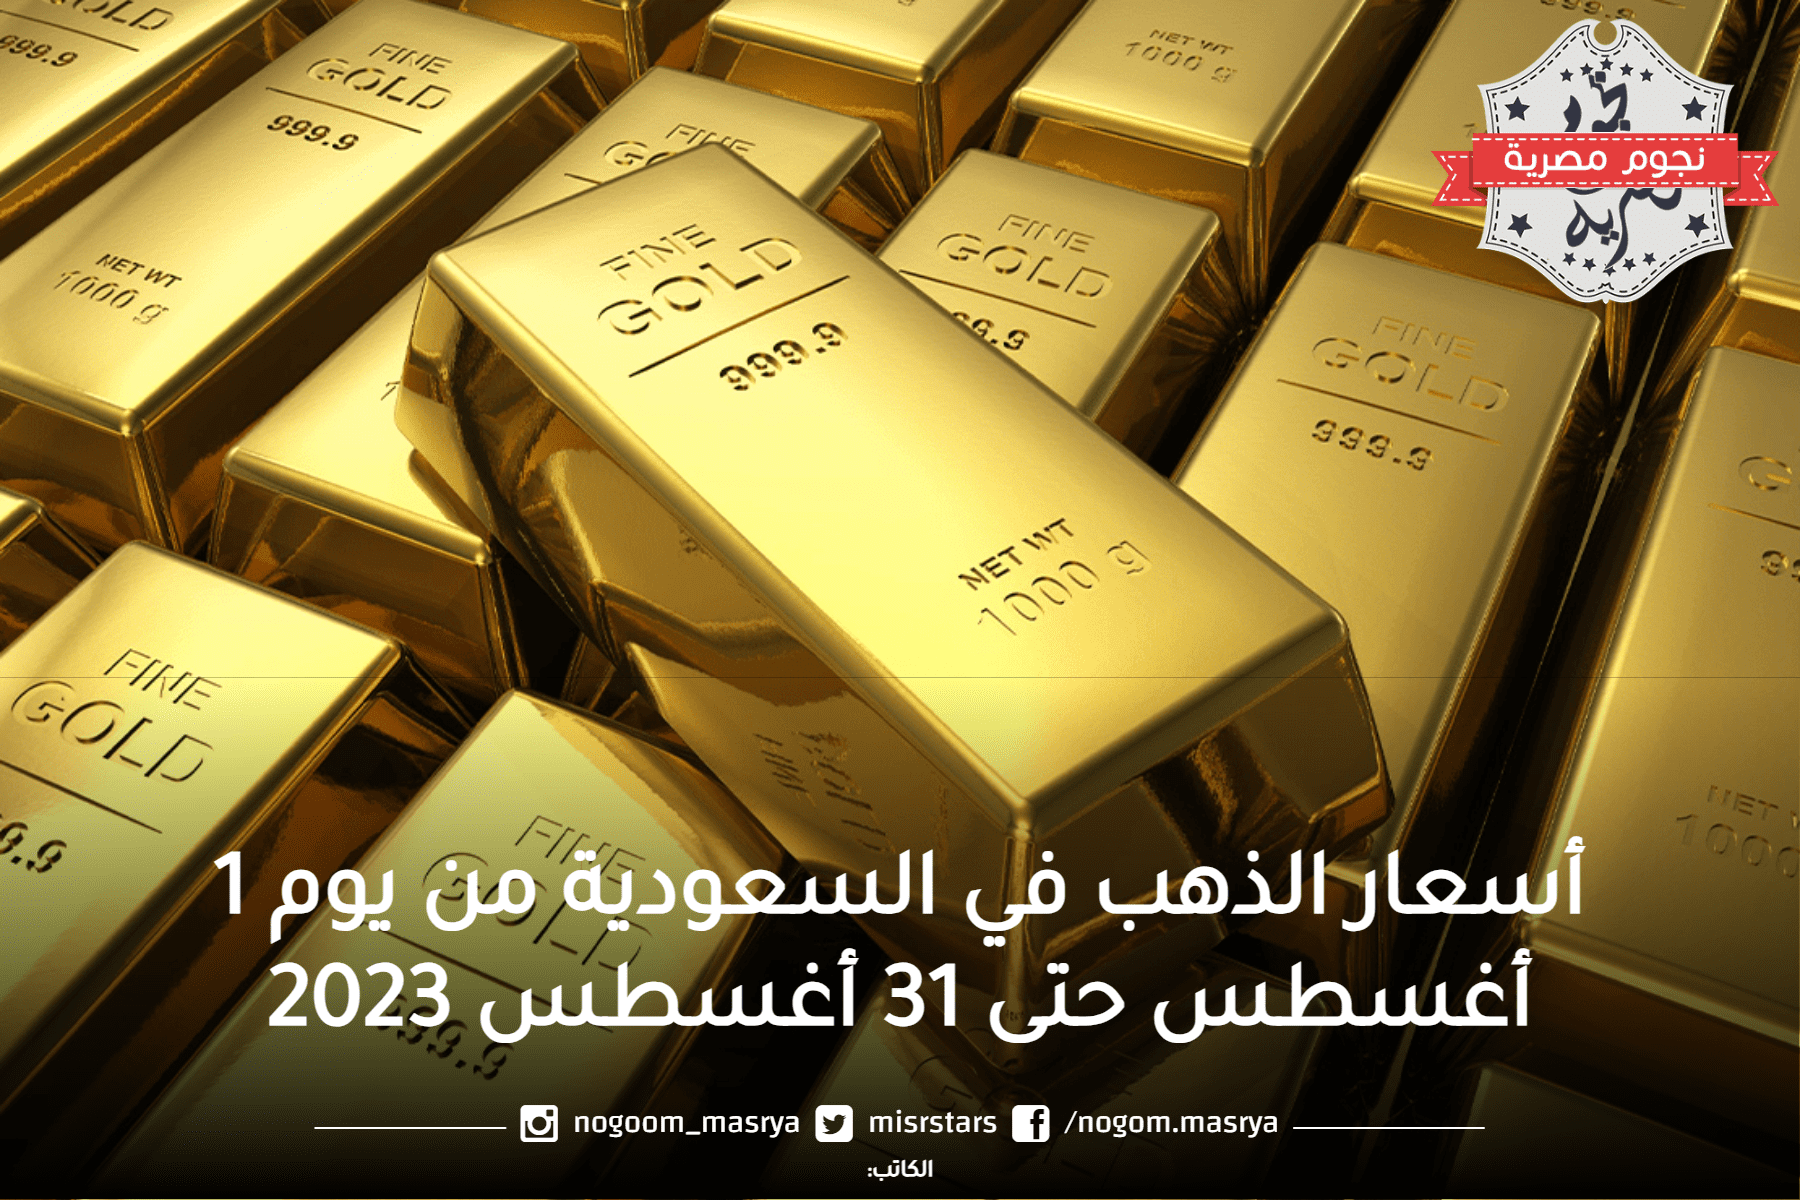 أسعار الذهب في السعودية السجل التاريخي من بداية الشهر 1 أغسطس حتى اليوم 31 أغسطس 2023.